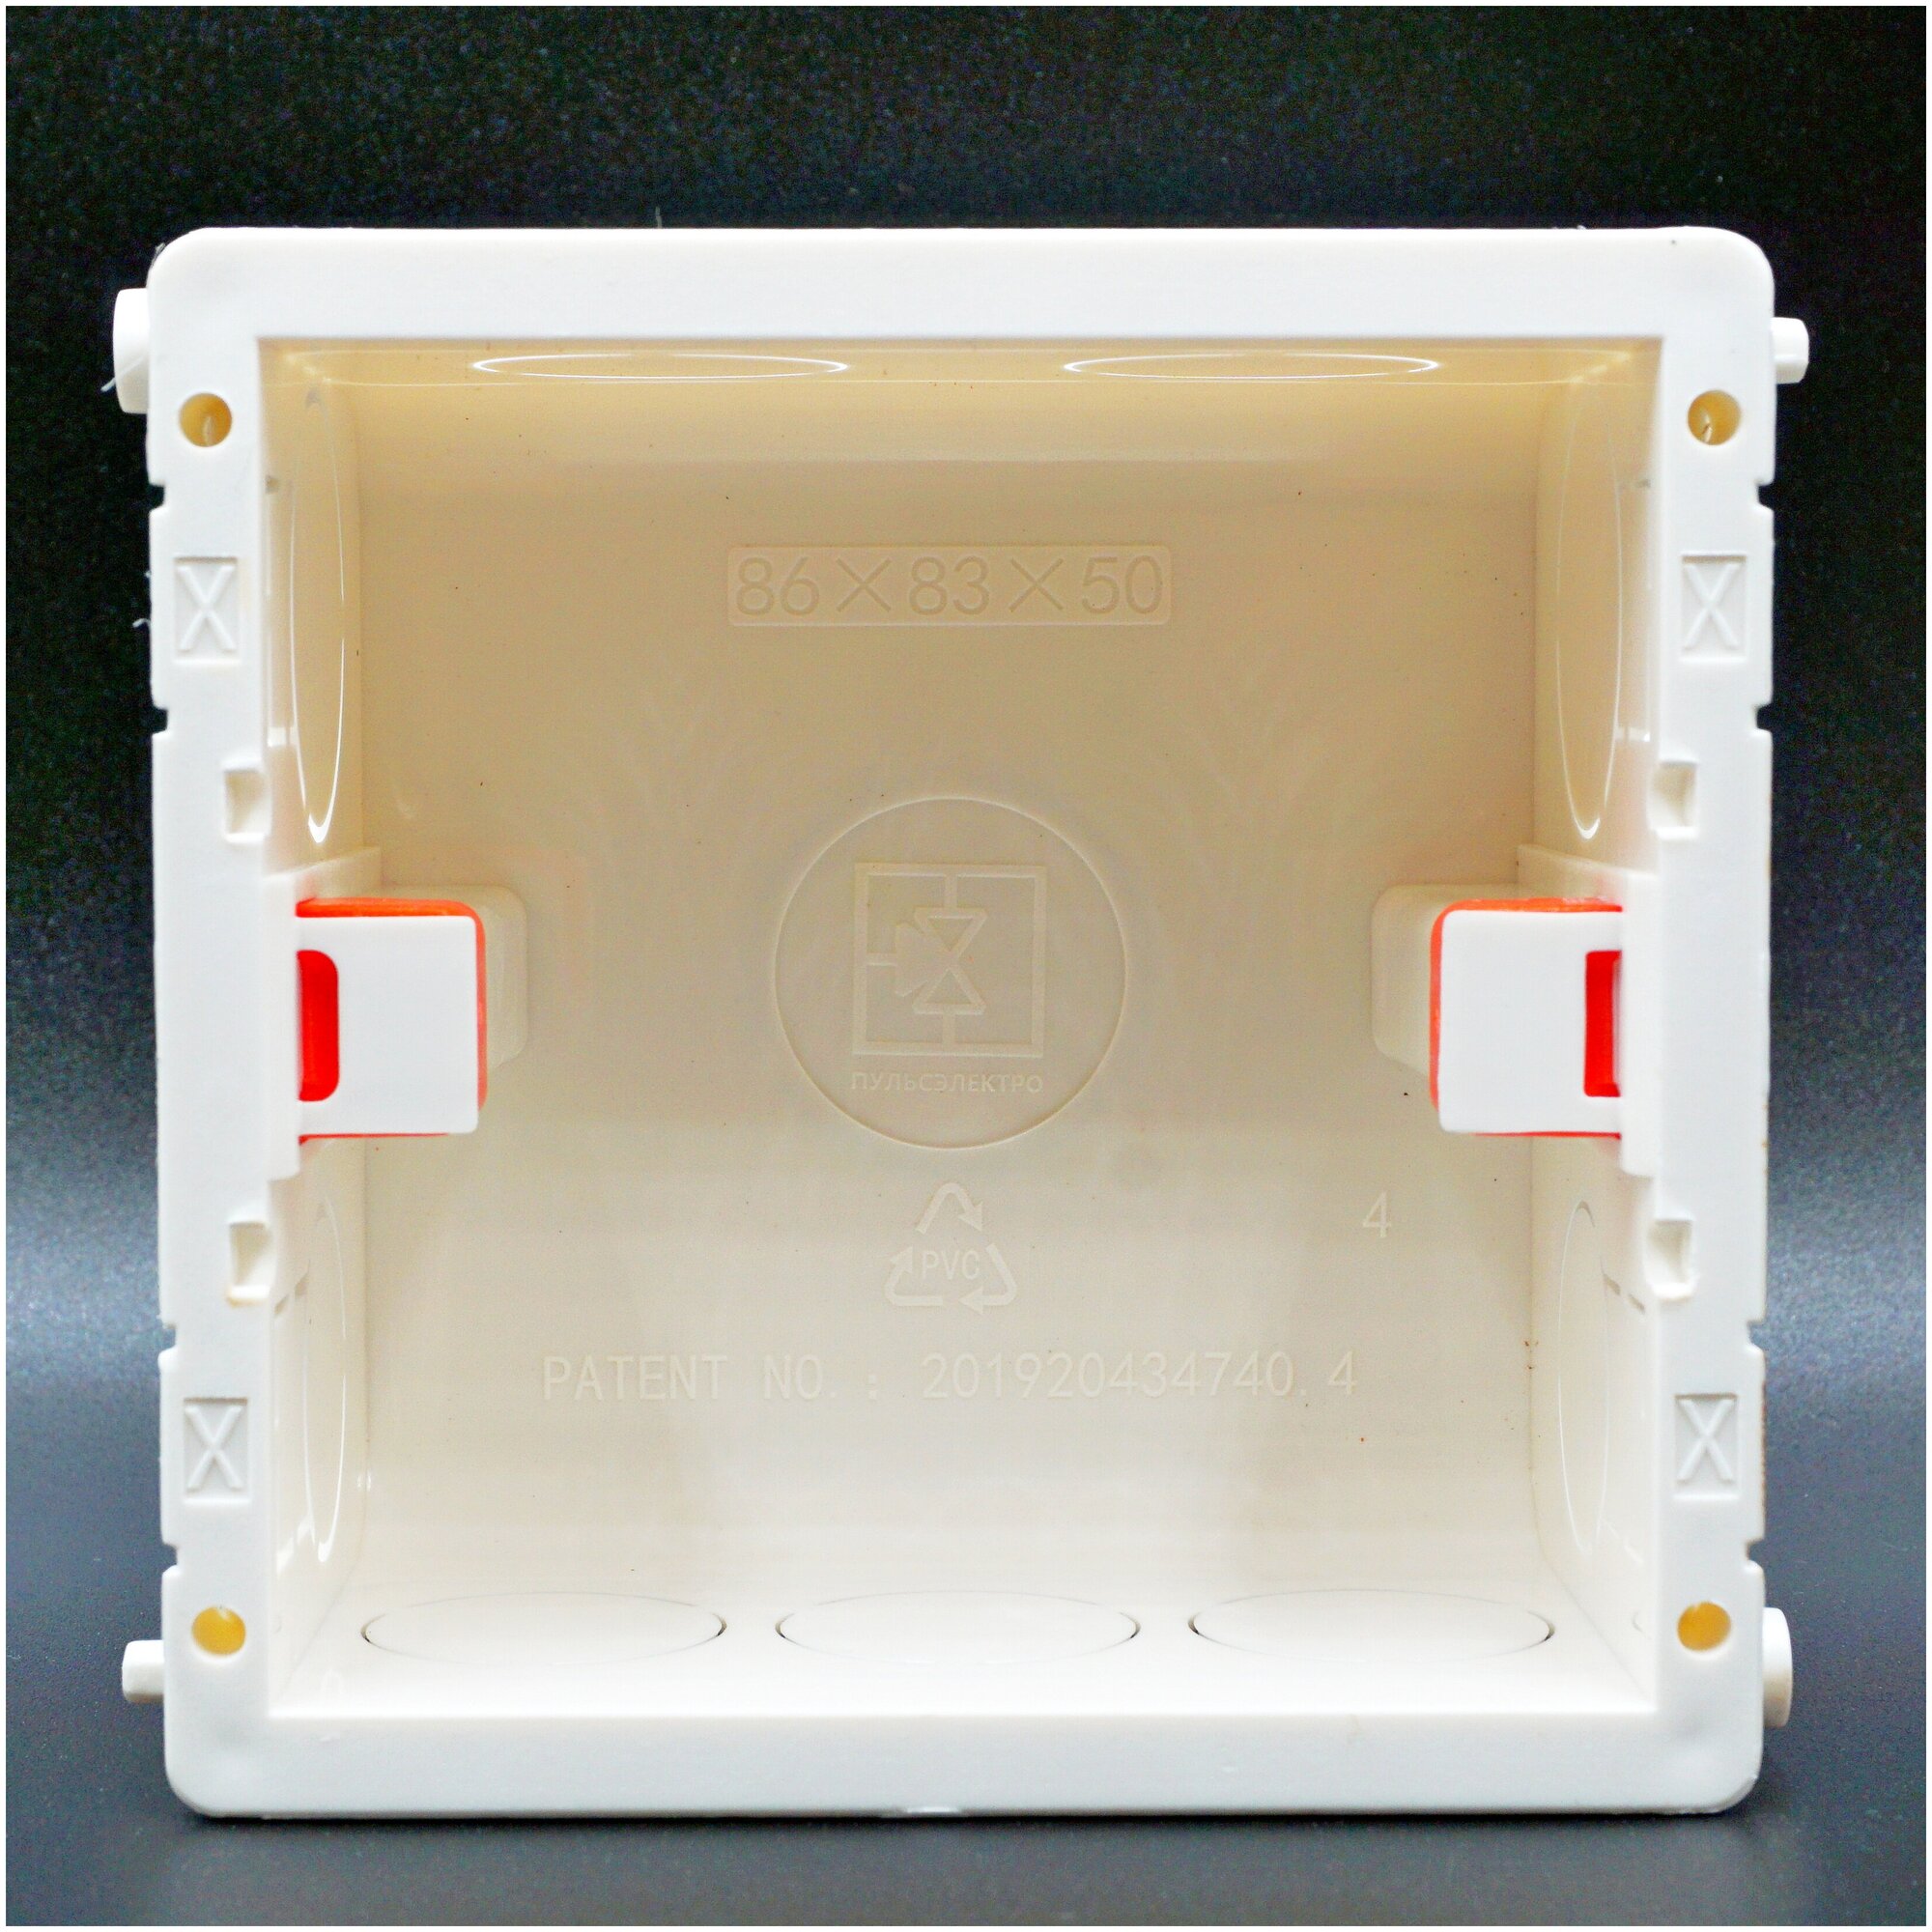 Квадратный подрозетник (коробка монтажная)86x83x50 мм для изделий Schneider Electric и Xiaomi, Aqara и других обладающих квадратной внутренней частью.